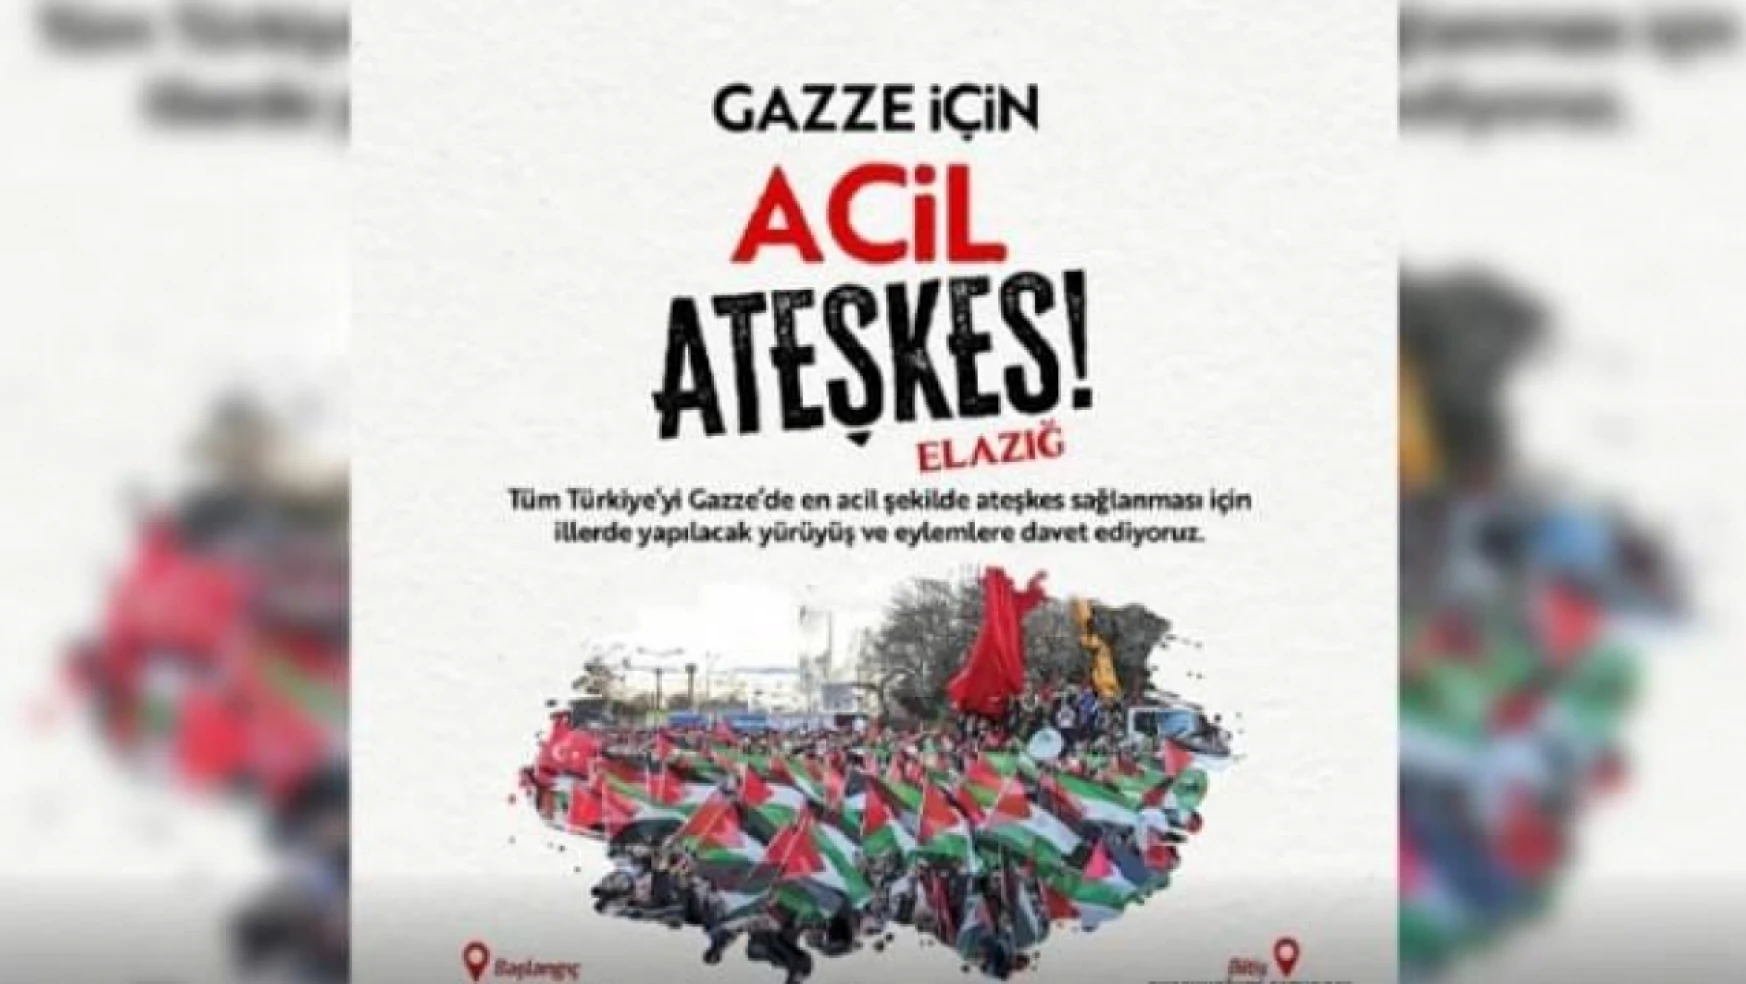 Elazığ'da 'Gazze için acil ateşkes!' yürüyüşü yapılacak